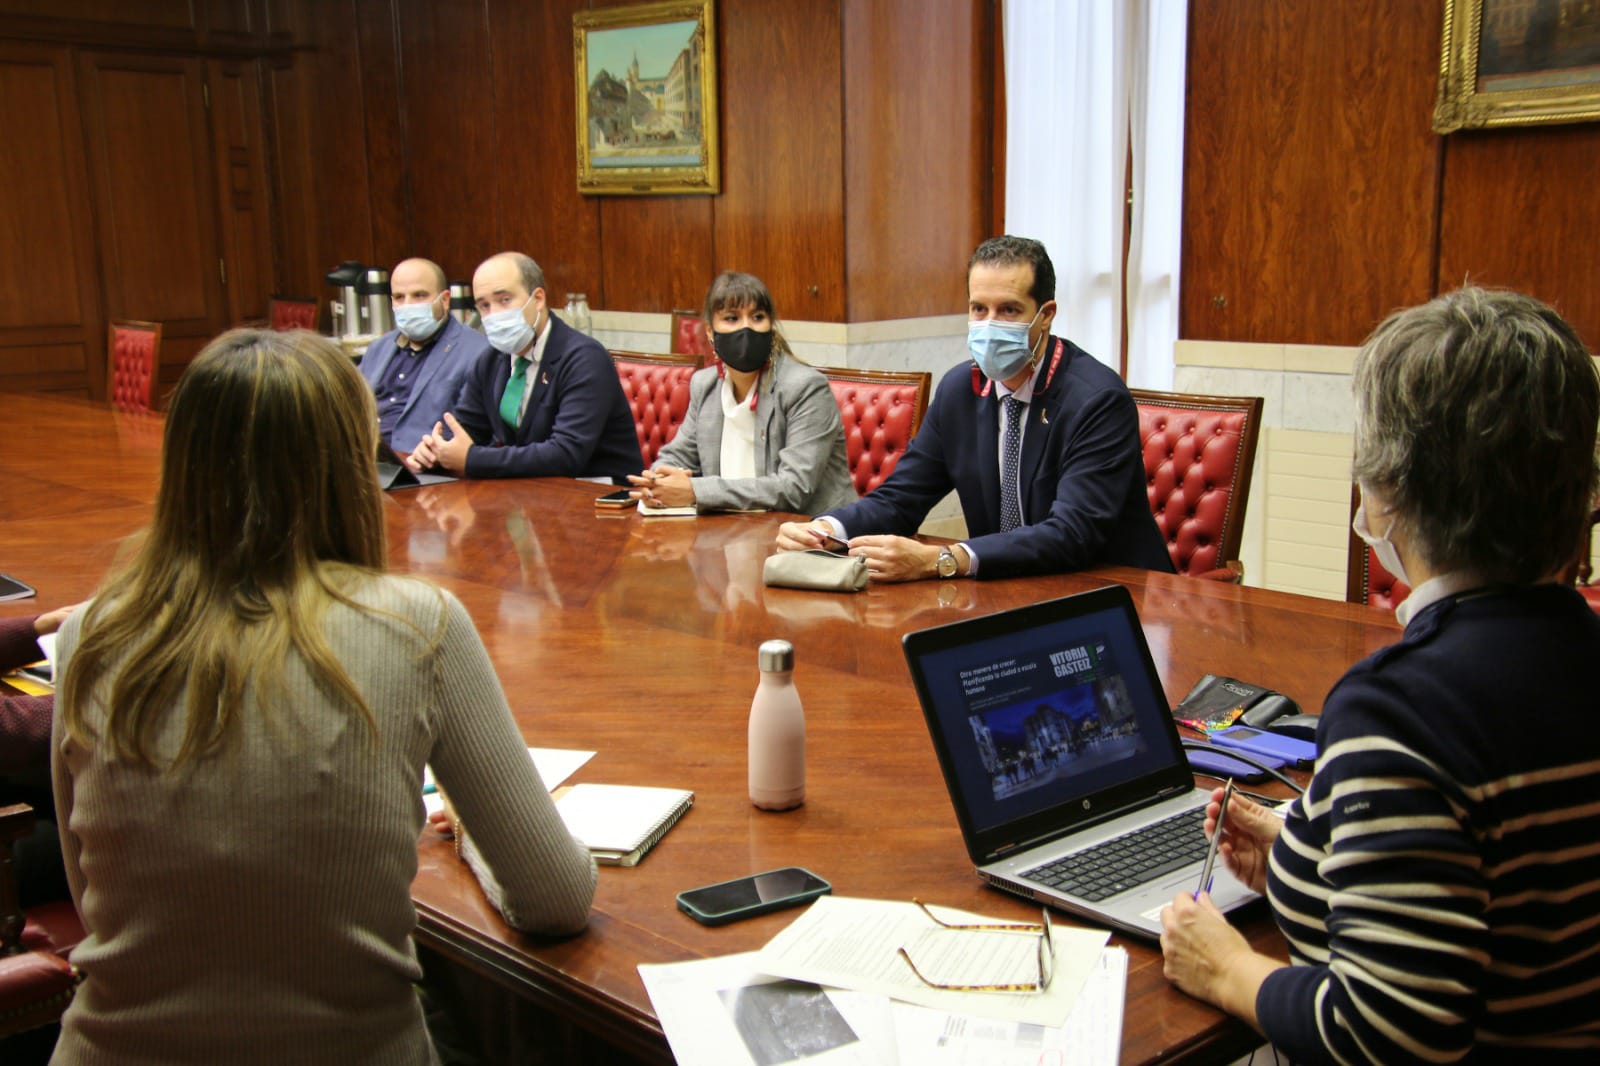 Una delegación de Elda visita Vitoria-Gasteiz para conocer las soluciones que la capital alavesa ha puesto en marcha en materia de sostenibilidad, eficiencia y accesibilidad